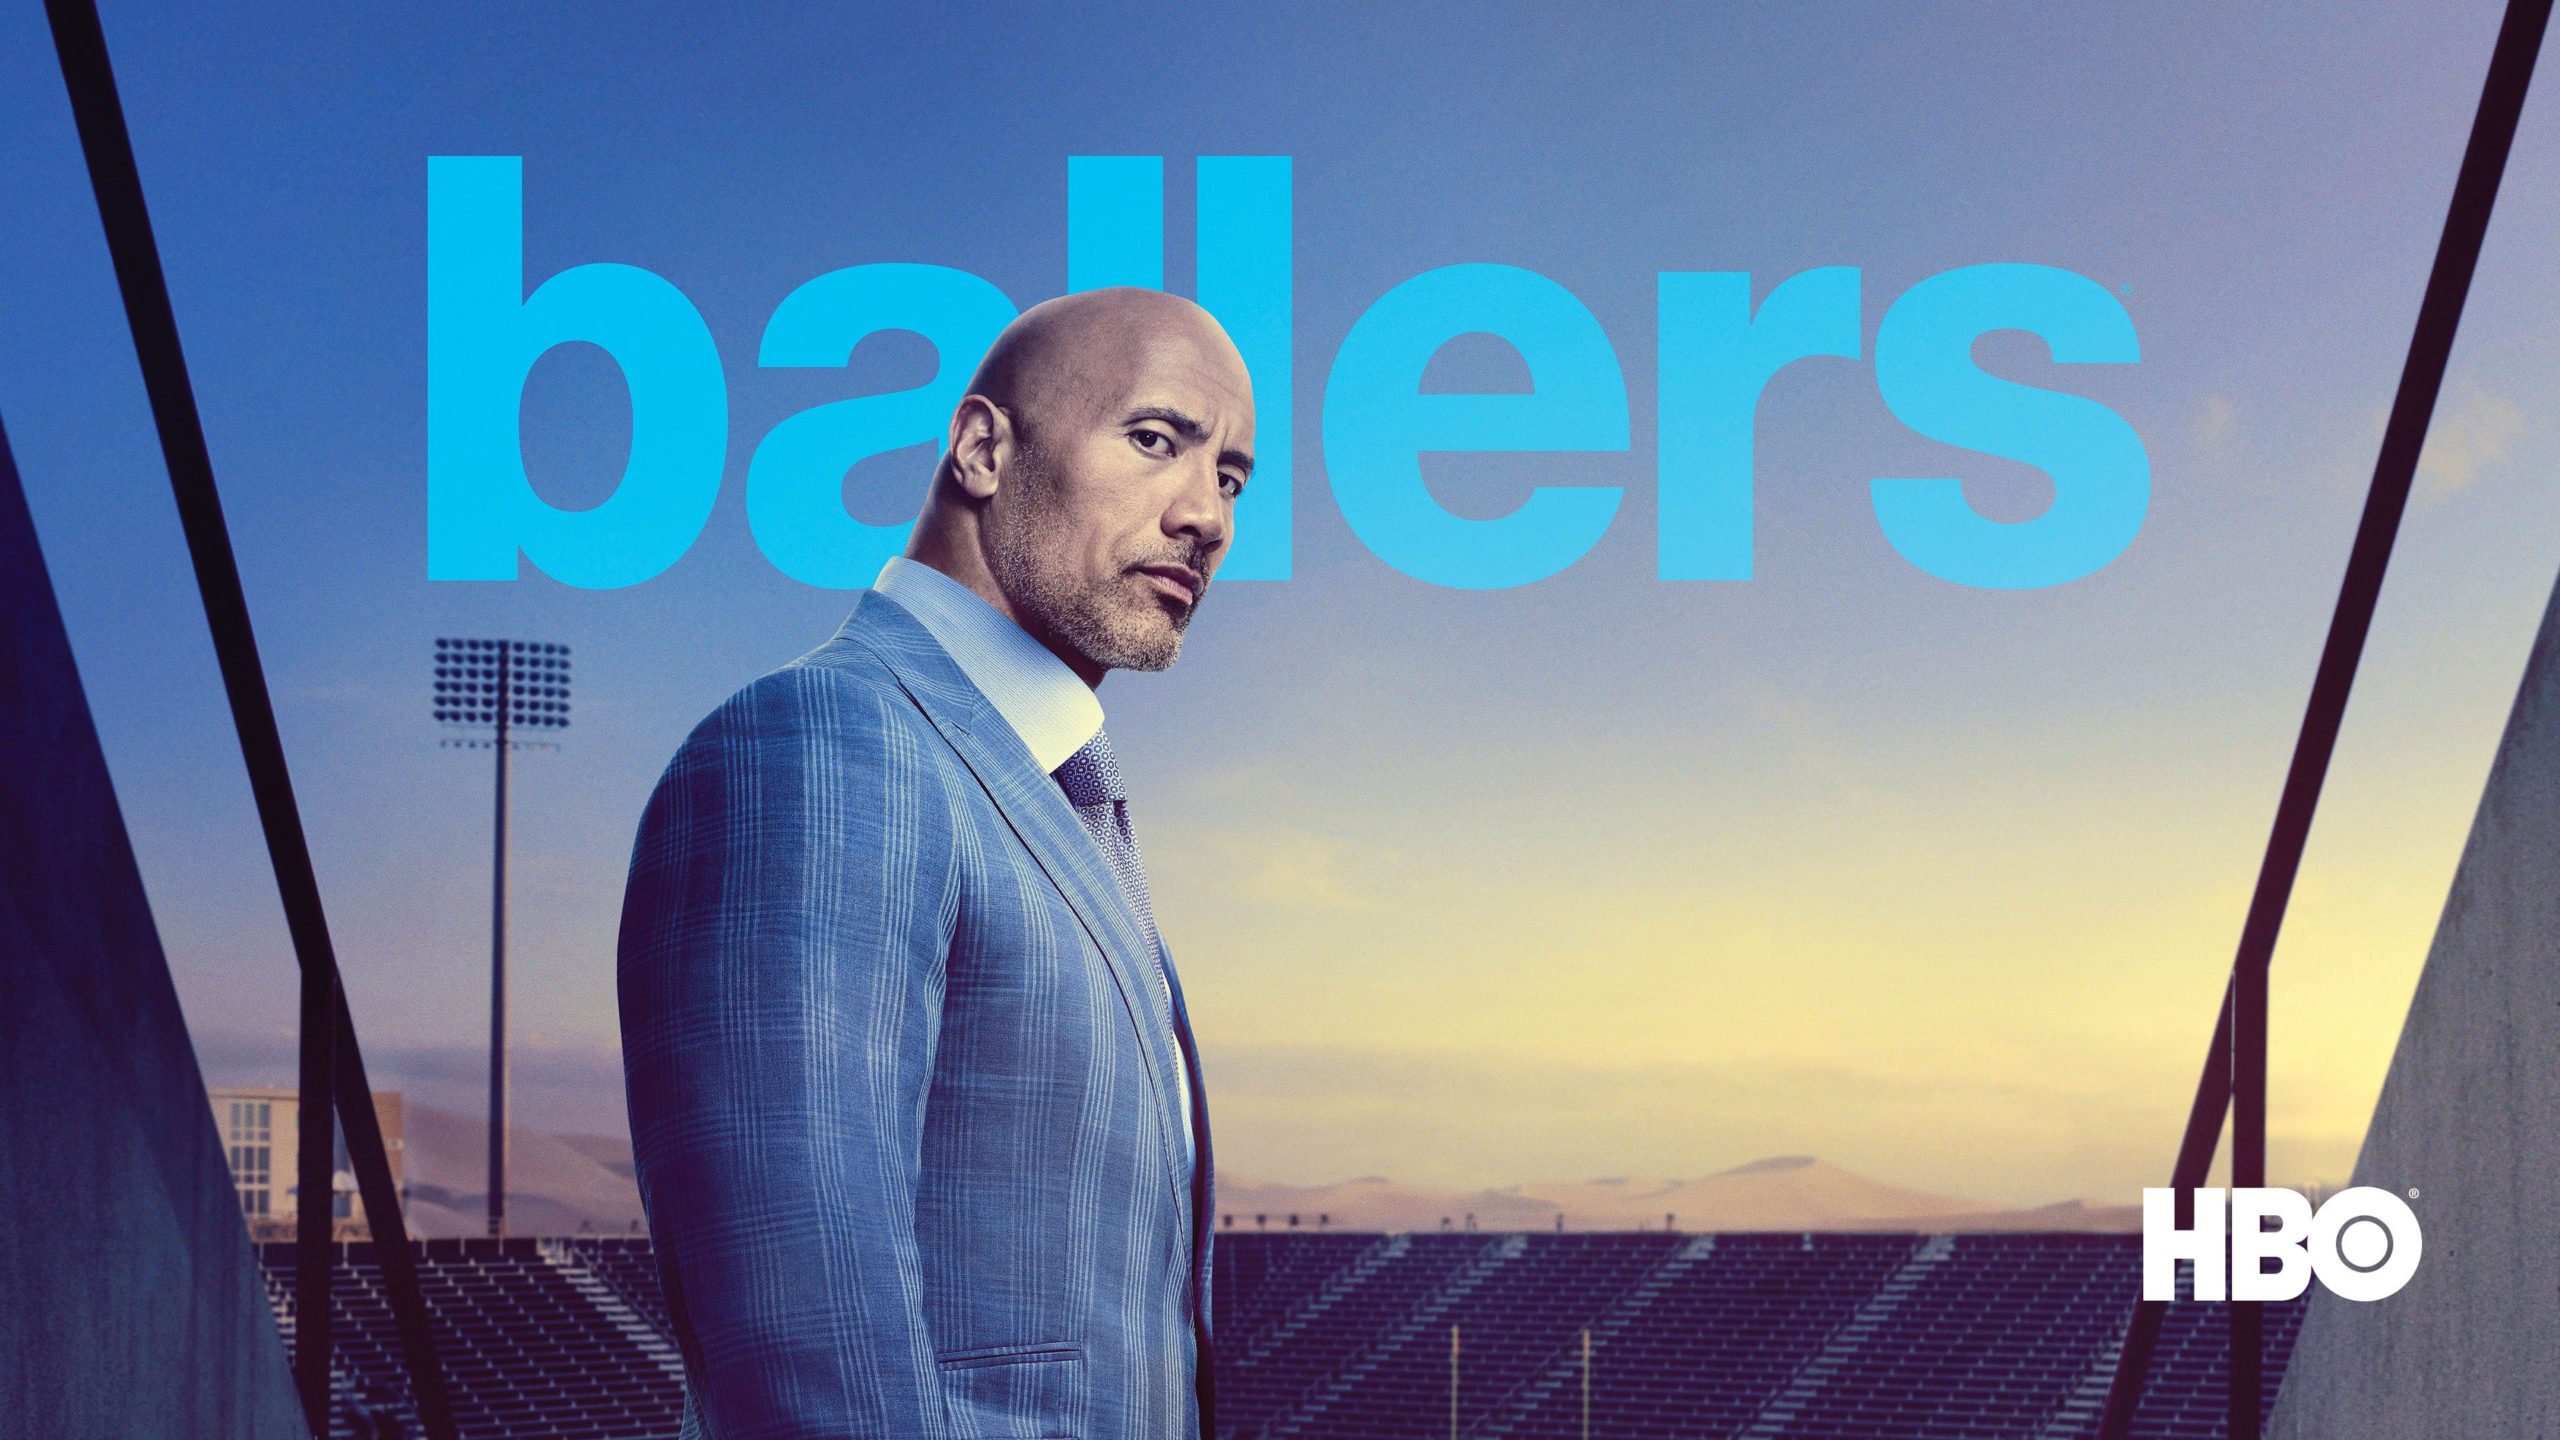  Ballers (2015-2019) Ballers (2015-2019) ist eine US-amerikanische Fernsehserie, die von Stephen Levinson entwickelt wurde. Sie handelt von einem ehemaligen Football-Spieler, der nun als Finanzberater für andere Spieler tätig ist. Die Serie wurde von HBO produziert und lief von 2015 bis 2019. 